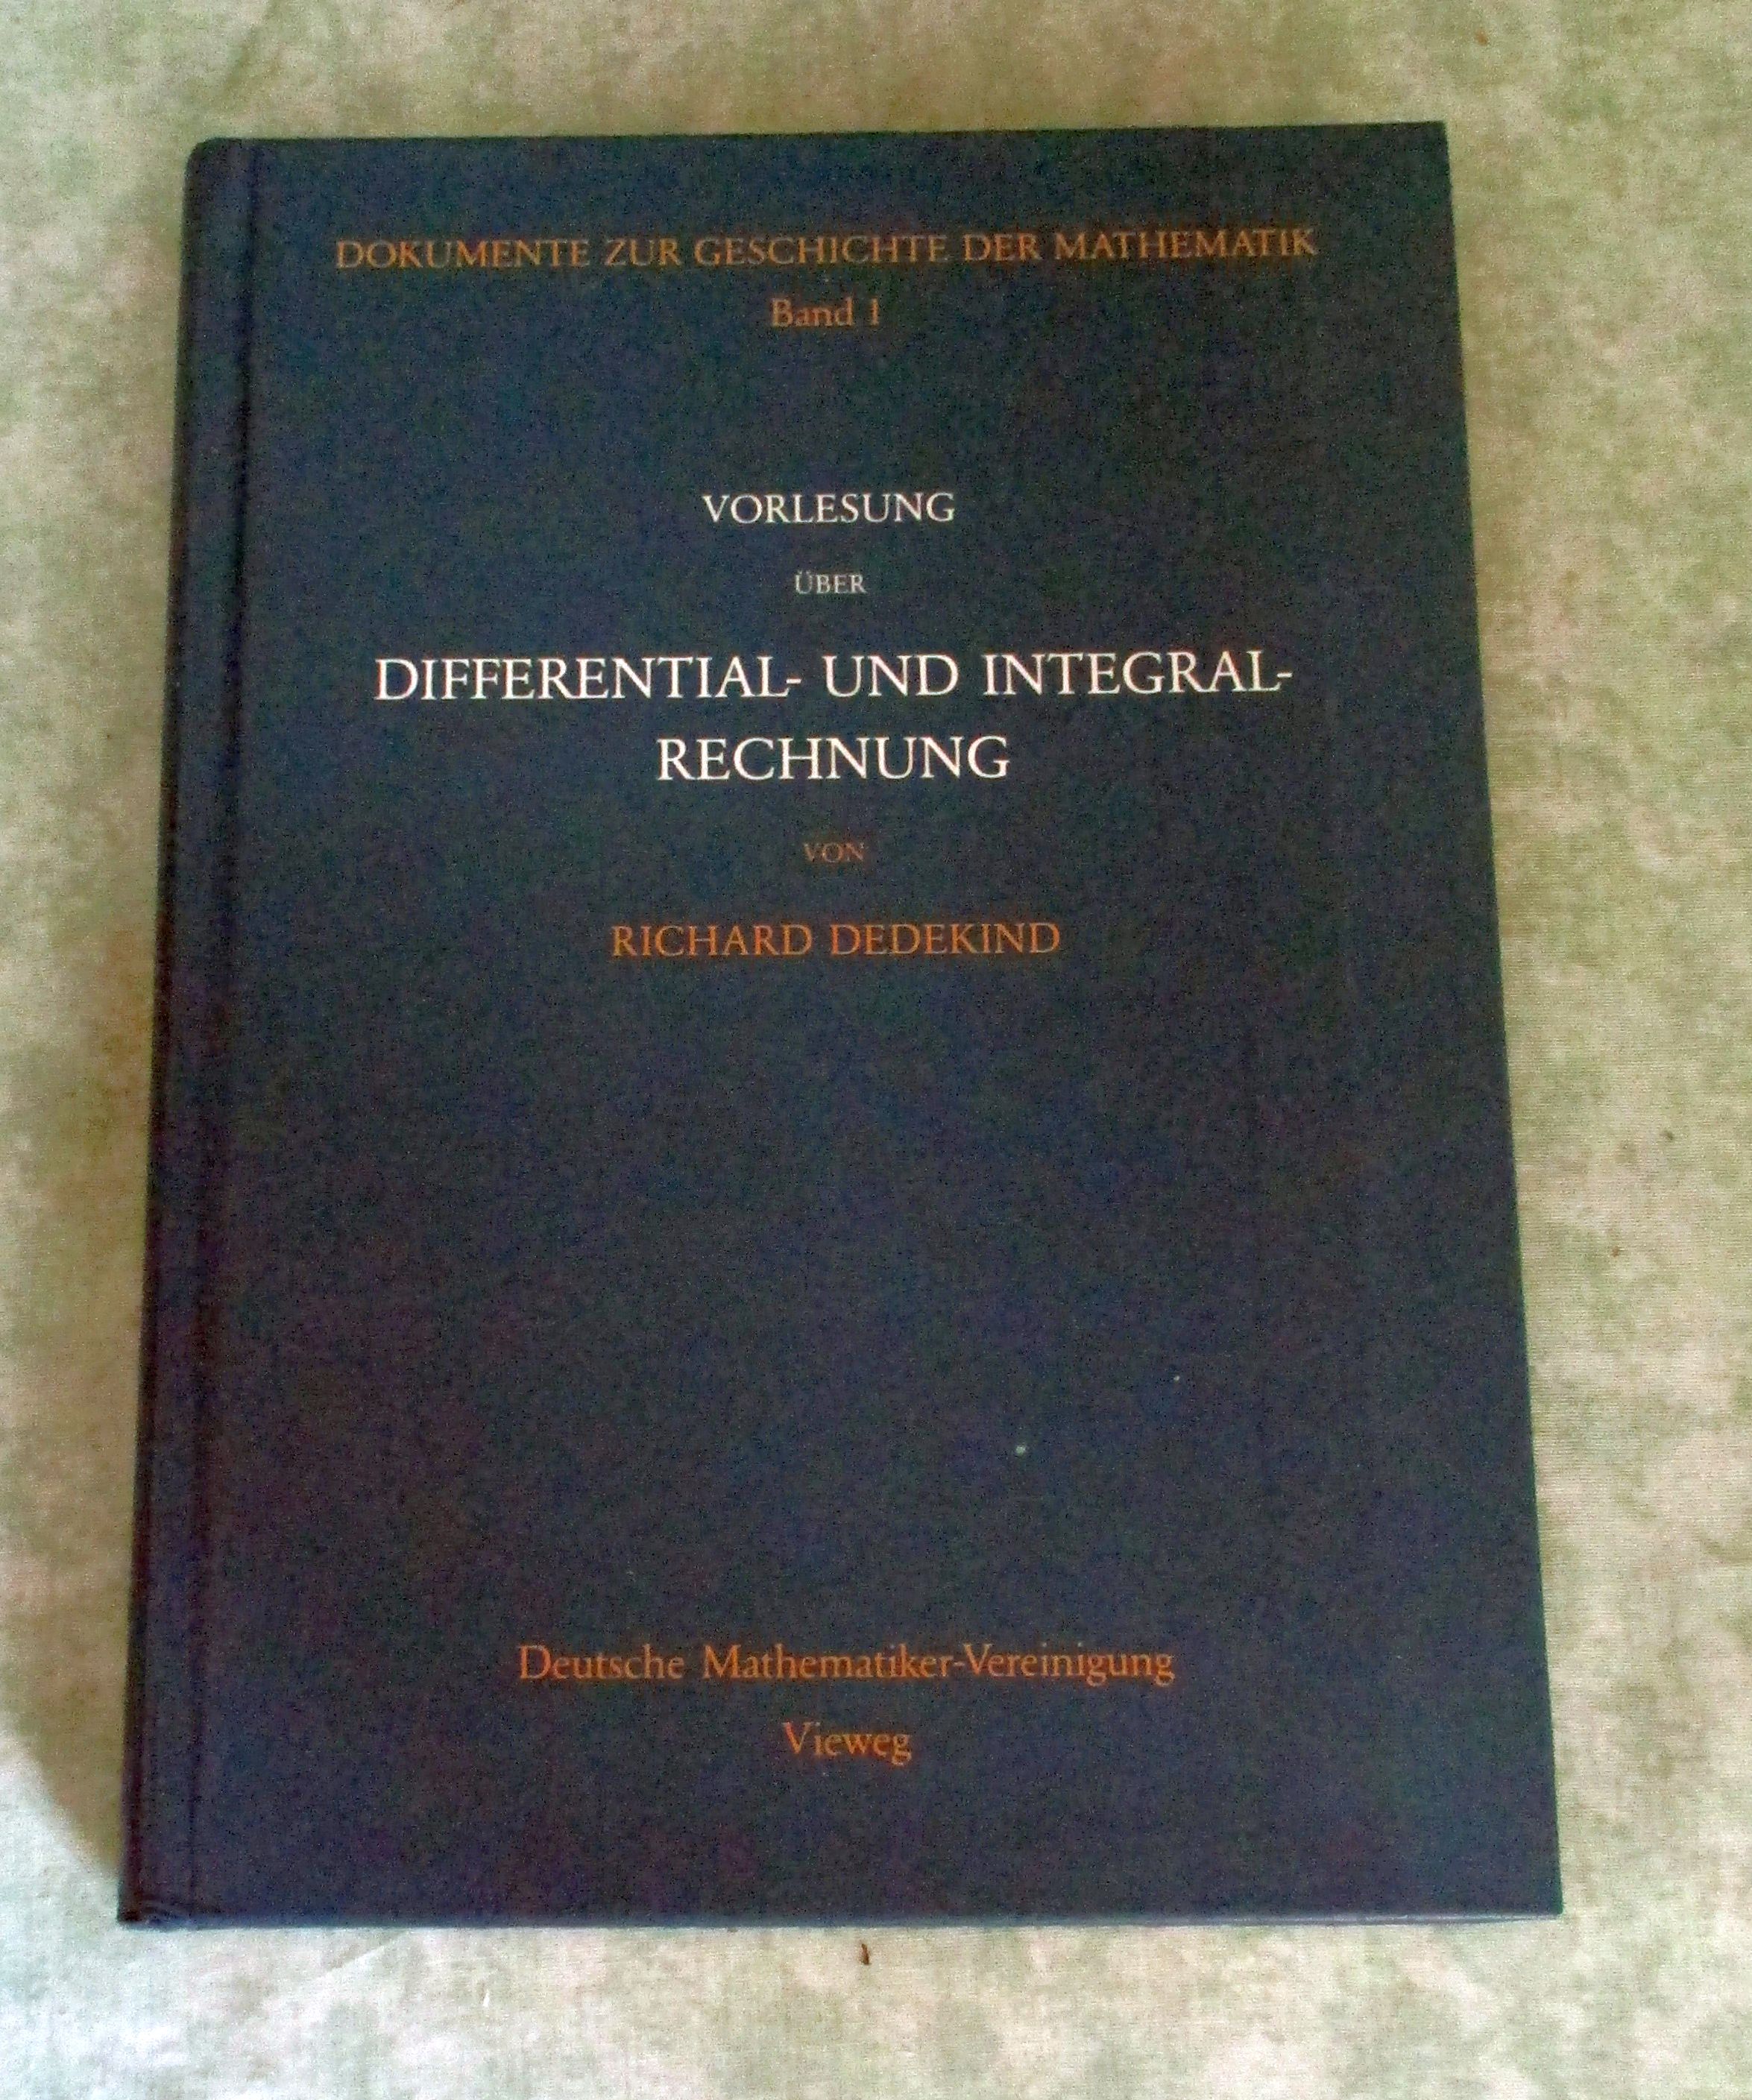 Vorlesung über Differential- und Integralrechnung 1861/62. - Naturwissenschaften - Chemie - Physik -Mathematik Dedekind, Richard